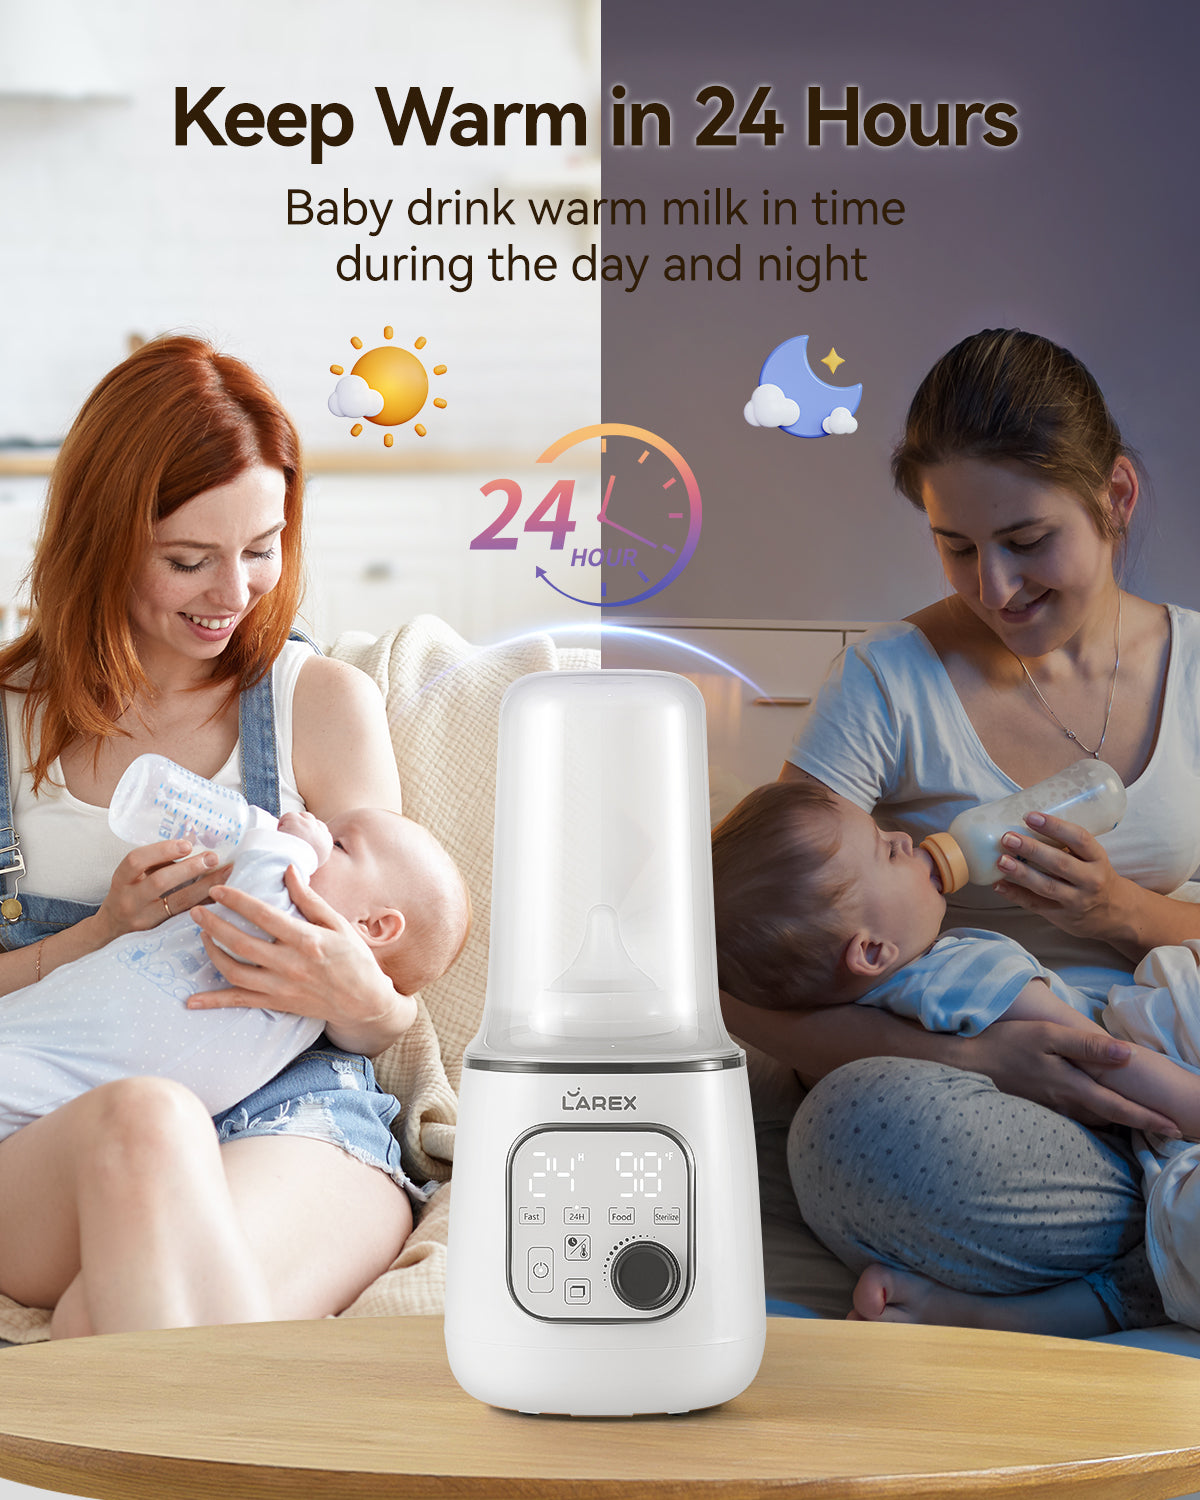 Larex 10-in-1 Baby Bottle Warmer